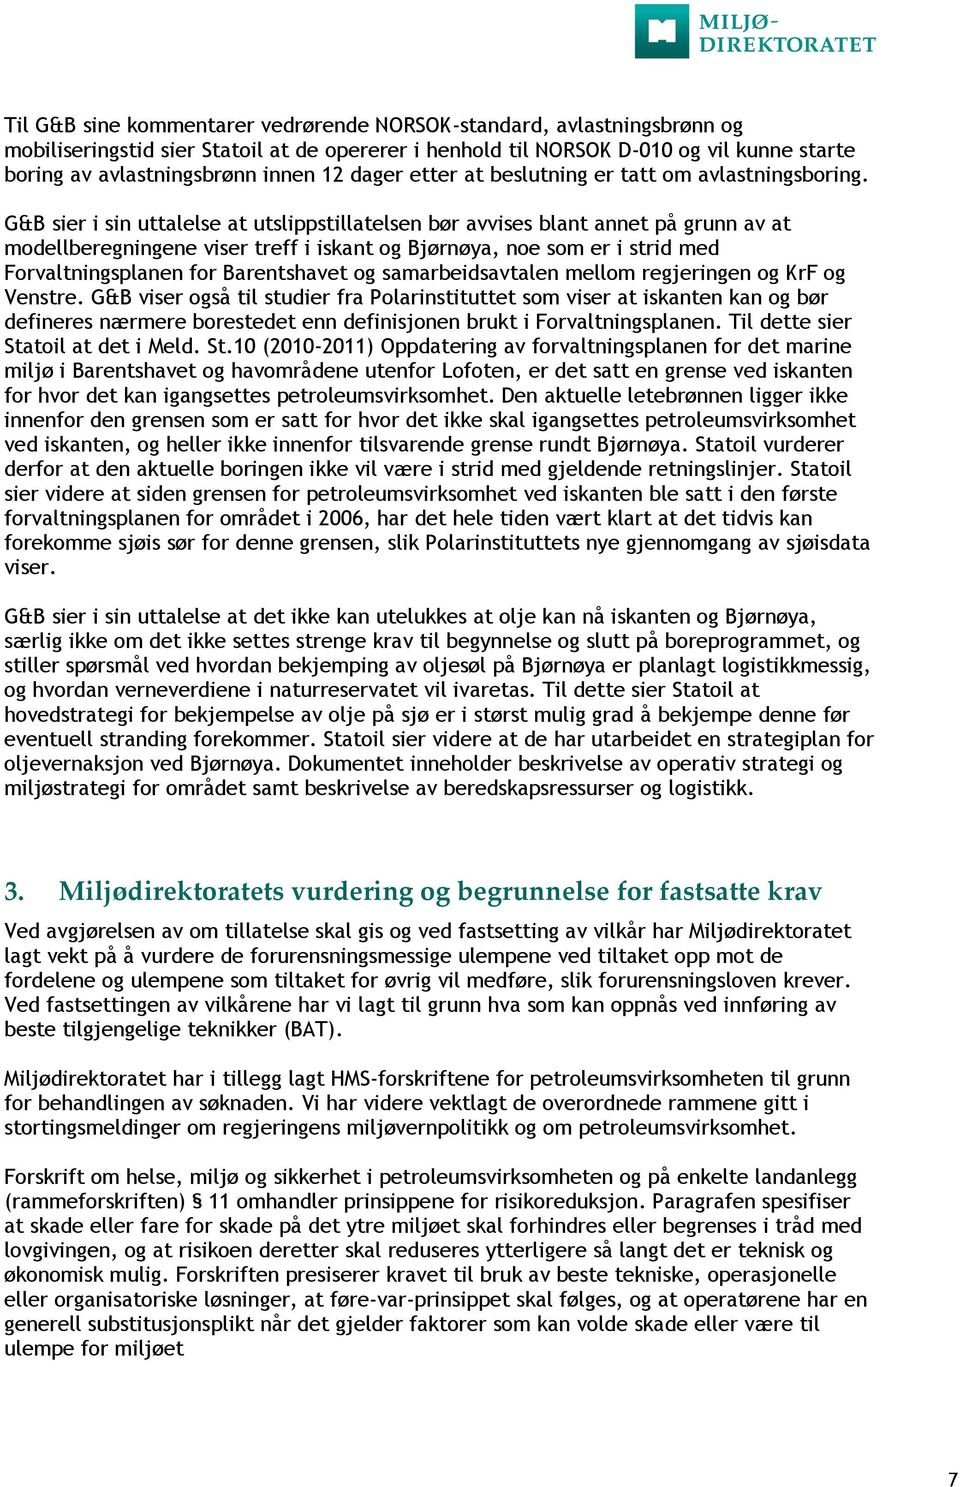 G&B sier i sin uttalelse at utslippstillatelsen bør avvises blant annet på grunn av at modellberegningene viser treff i iskant og Bjørnøya, noe som er i strid med Forvaltningsplanen for Barentshavet